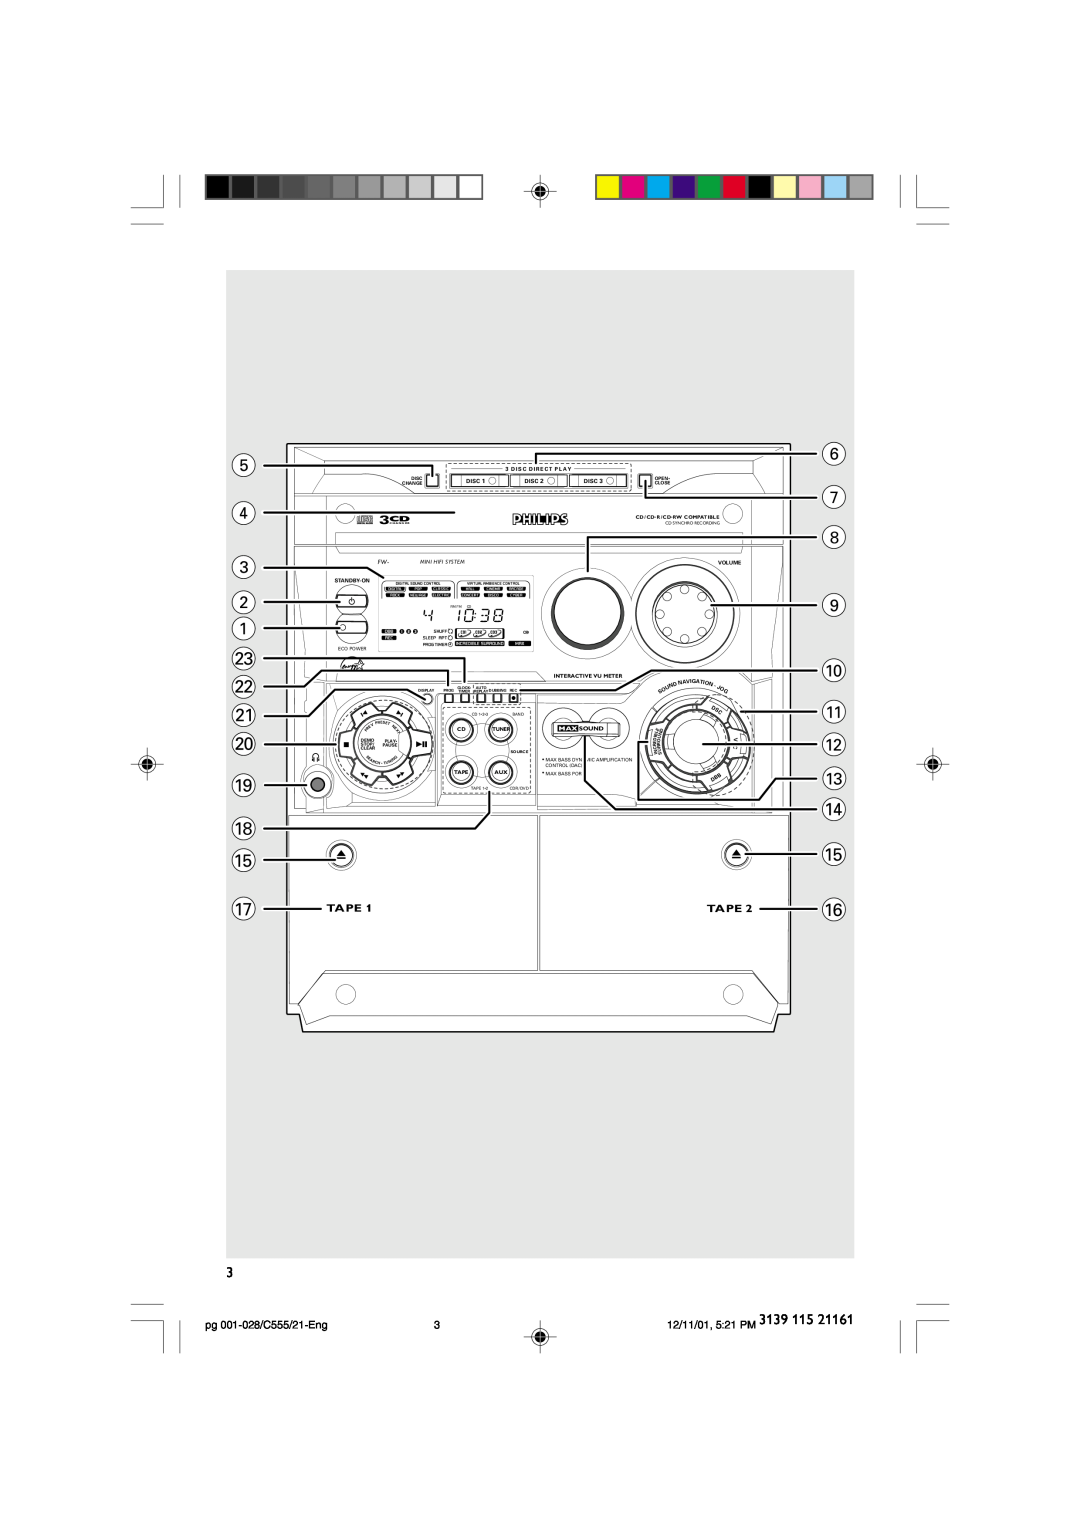 Philips manual @ # $ %, Tape, pg 001-028/C555/21-Eng, 12/11/01, 5 21 PM, Mini Hifi System 